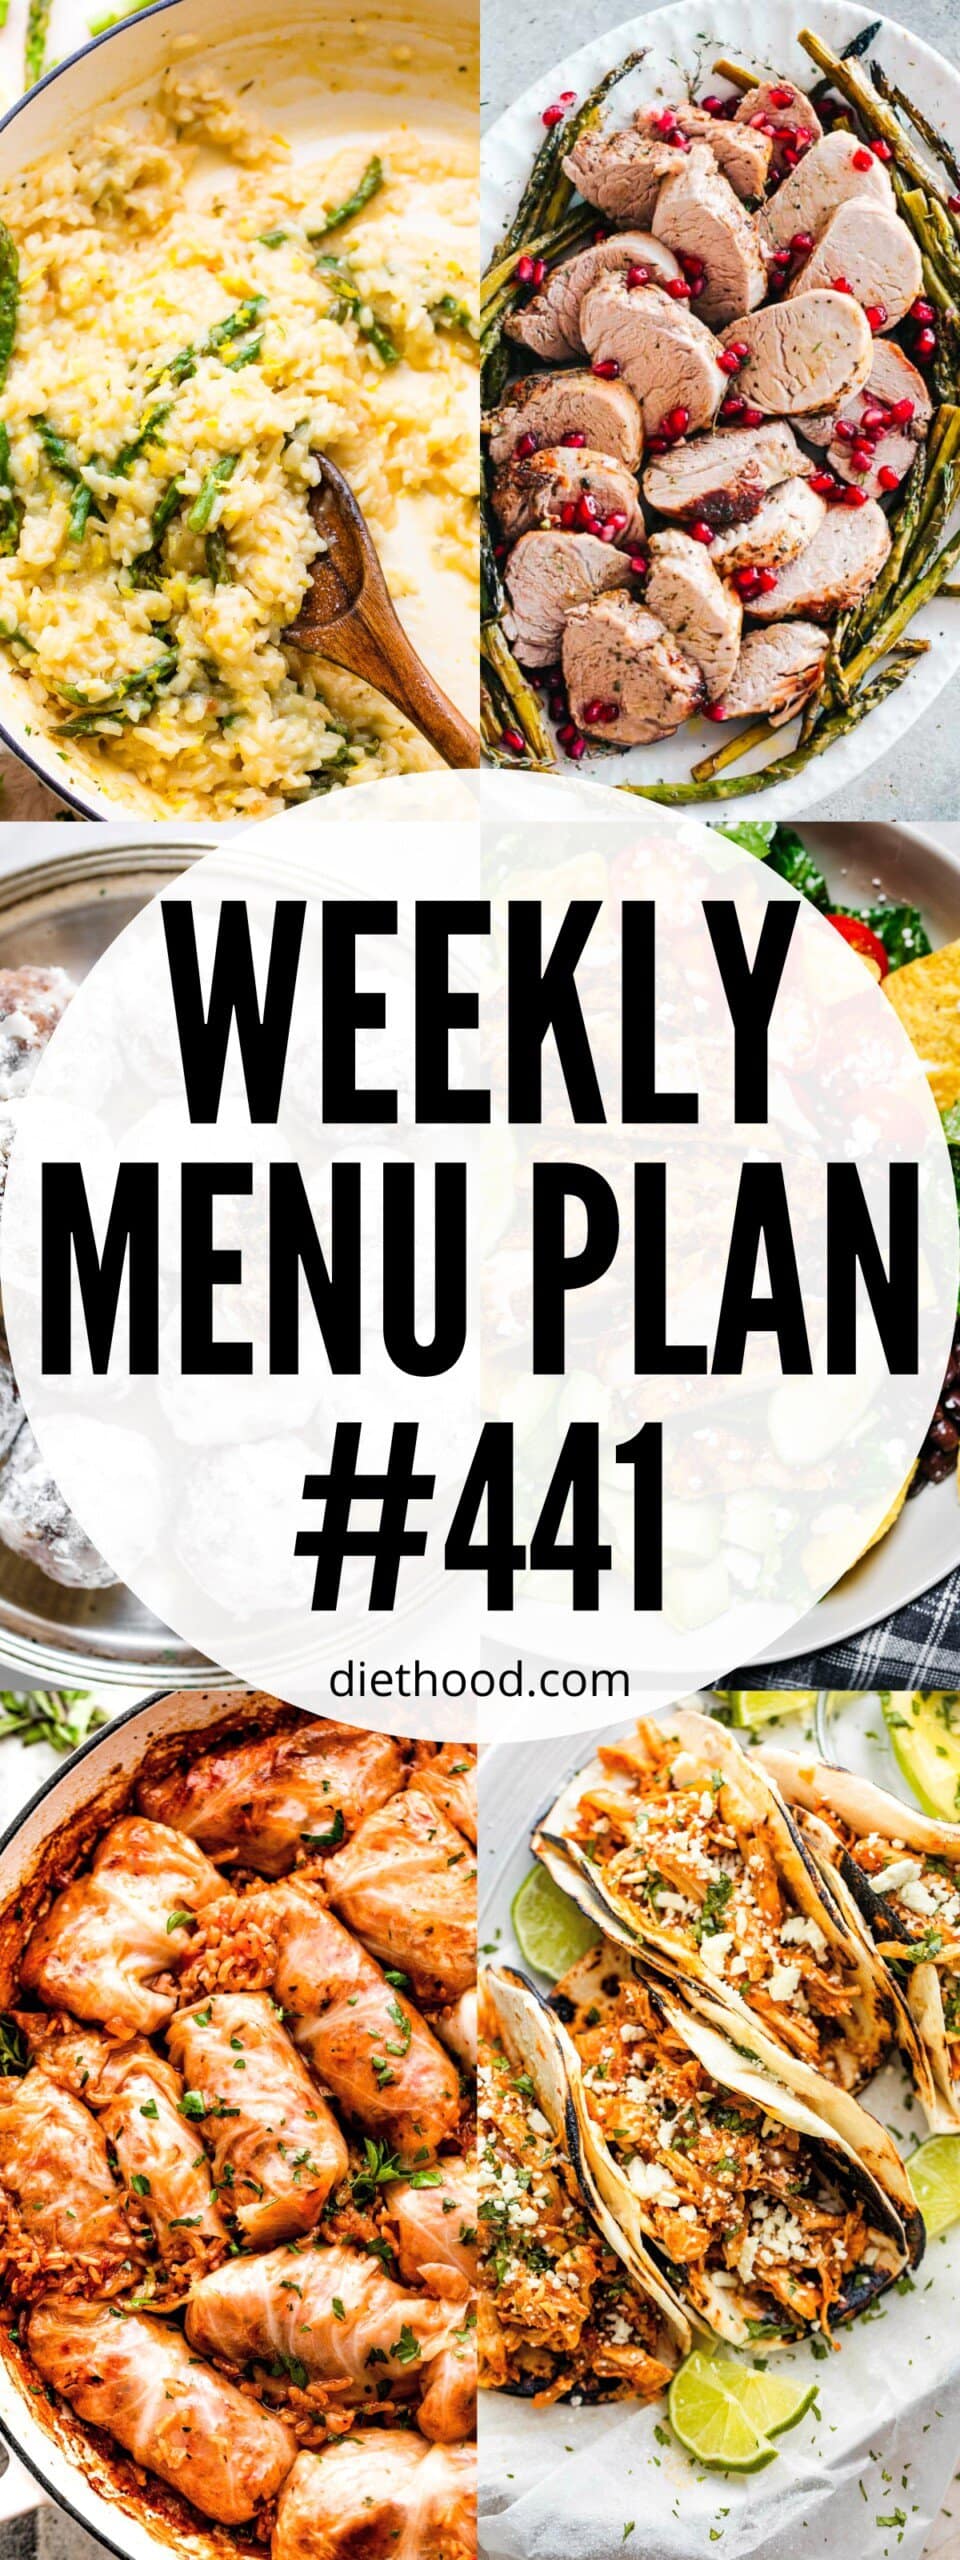 Weekly Menu Plan 441 six image collage Pinterest image.